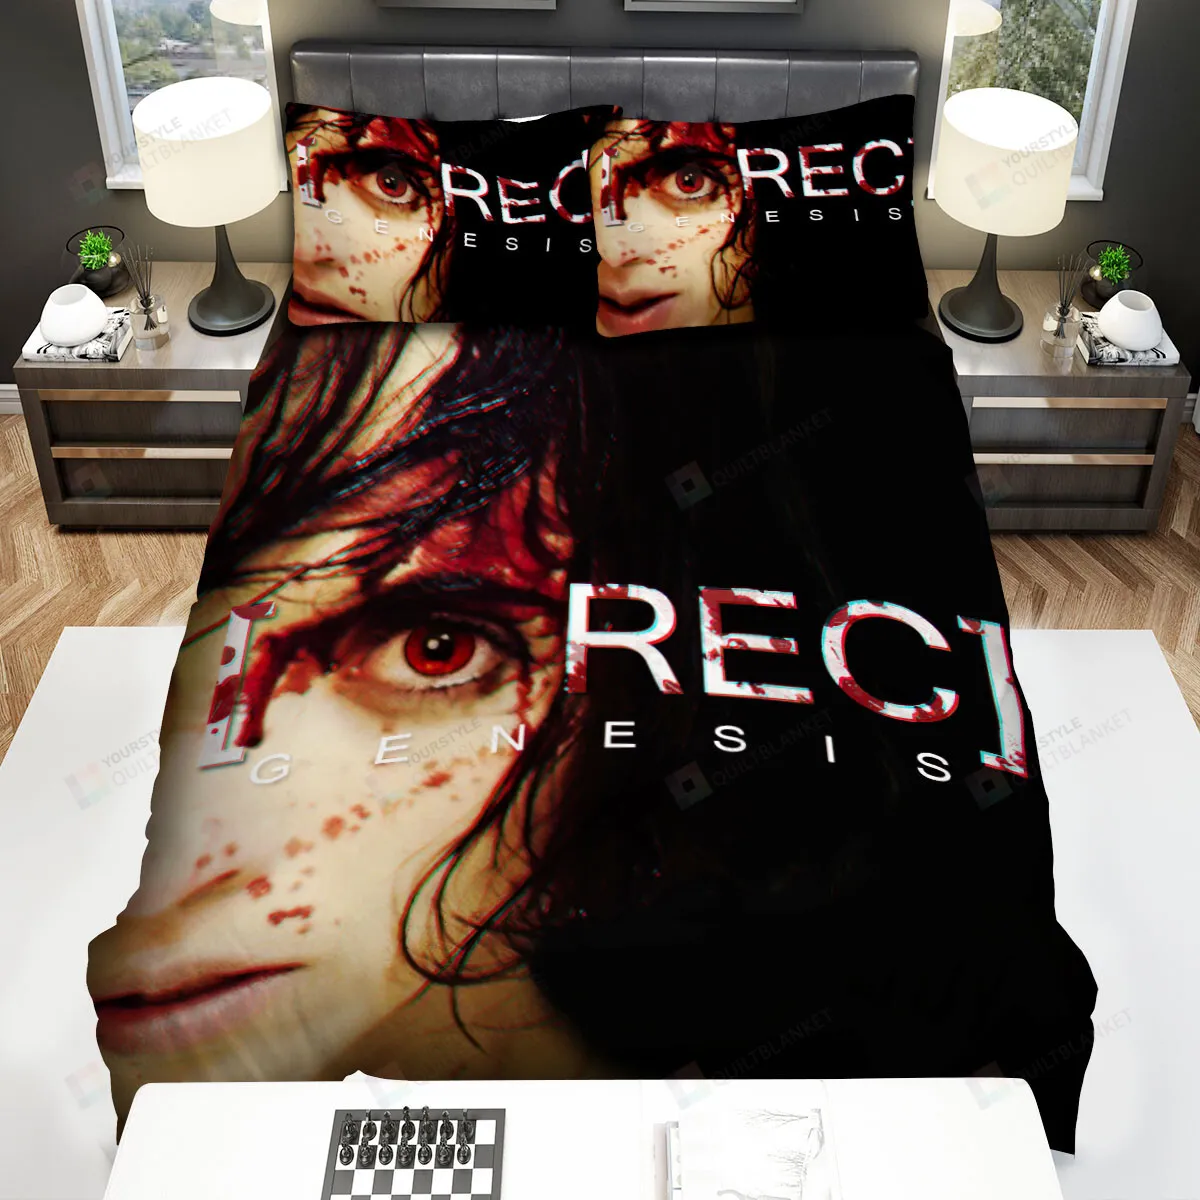 Rec 3 Genesis (2012) Blood Bed Sheets Spread Comforter Duvet Cover Bedding Sets